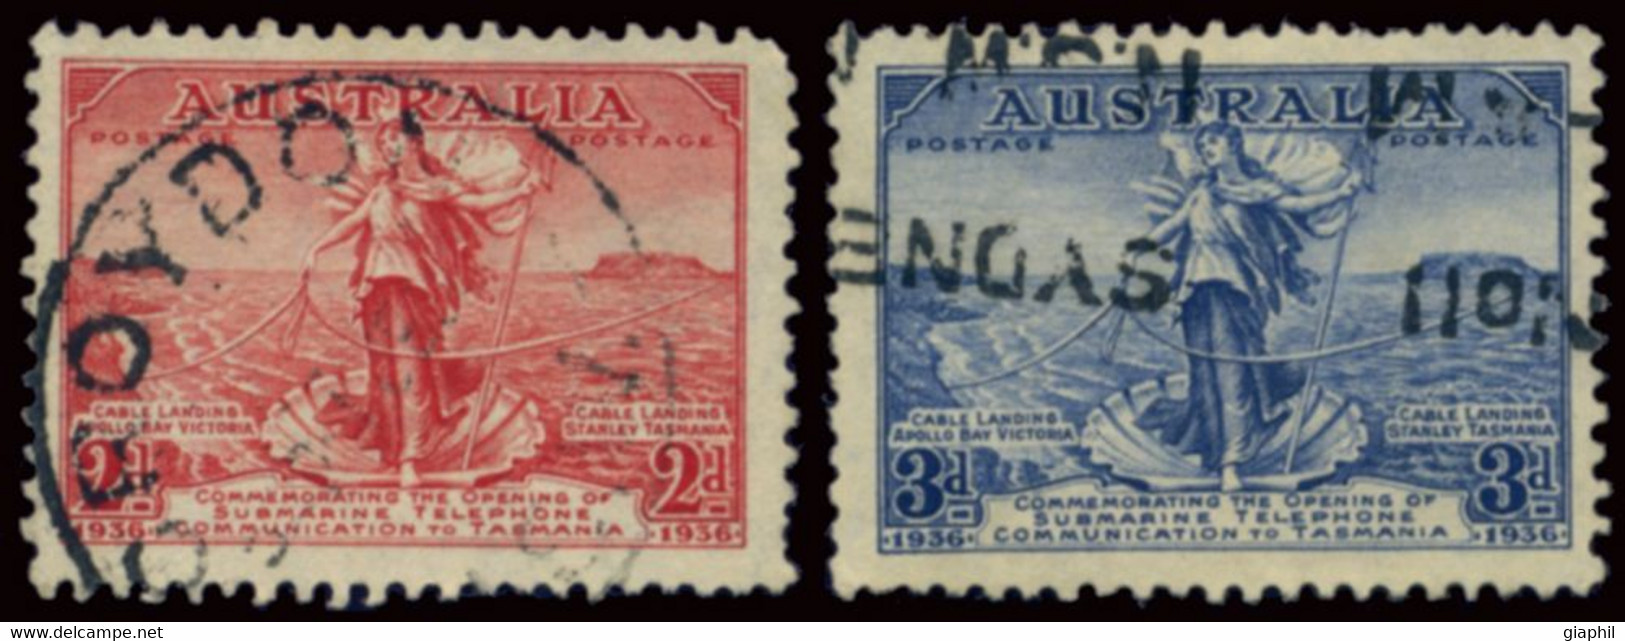 AUSTRALIA 1936 COMPLETE SET (SG 159-160) USED - Oblitérés